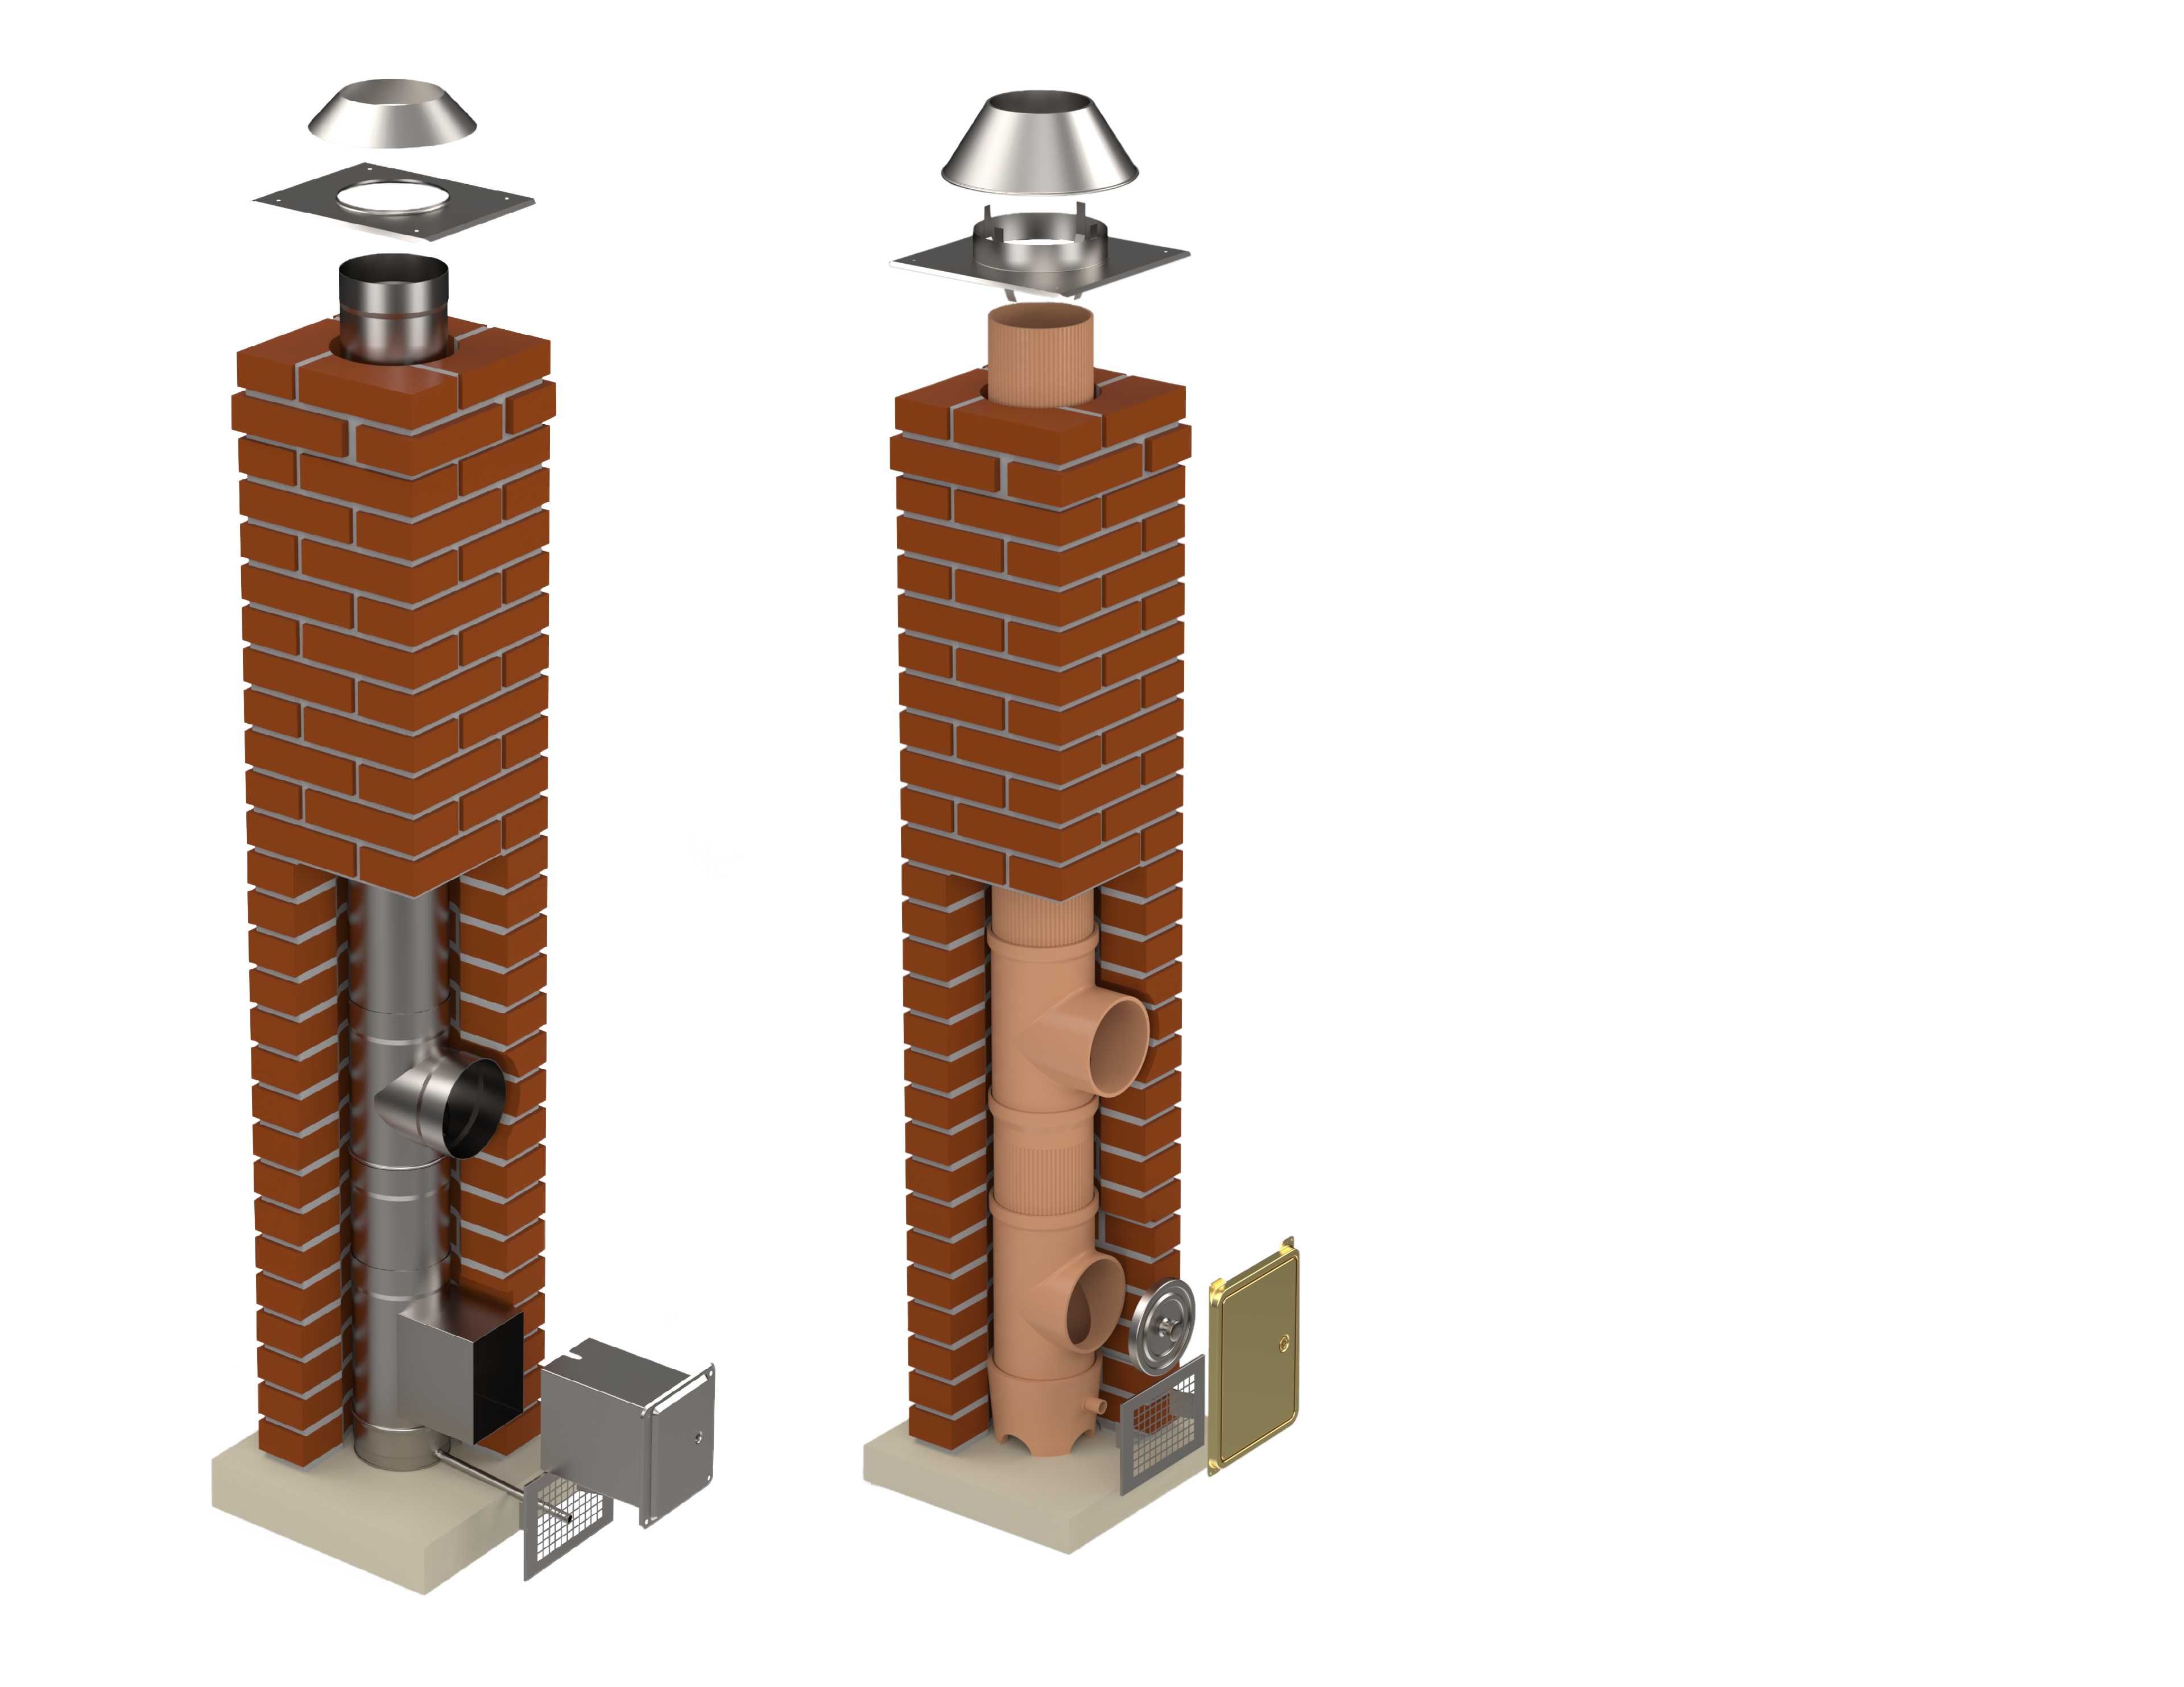 Frezowanie kominów montaż wkładów do komina systemy kominowe